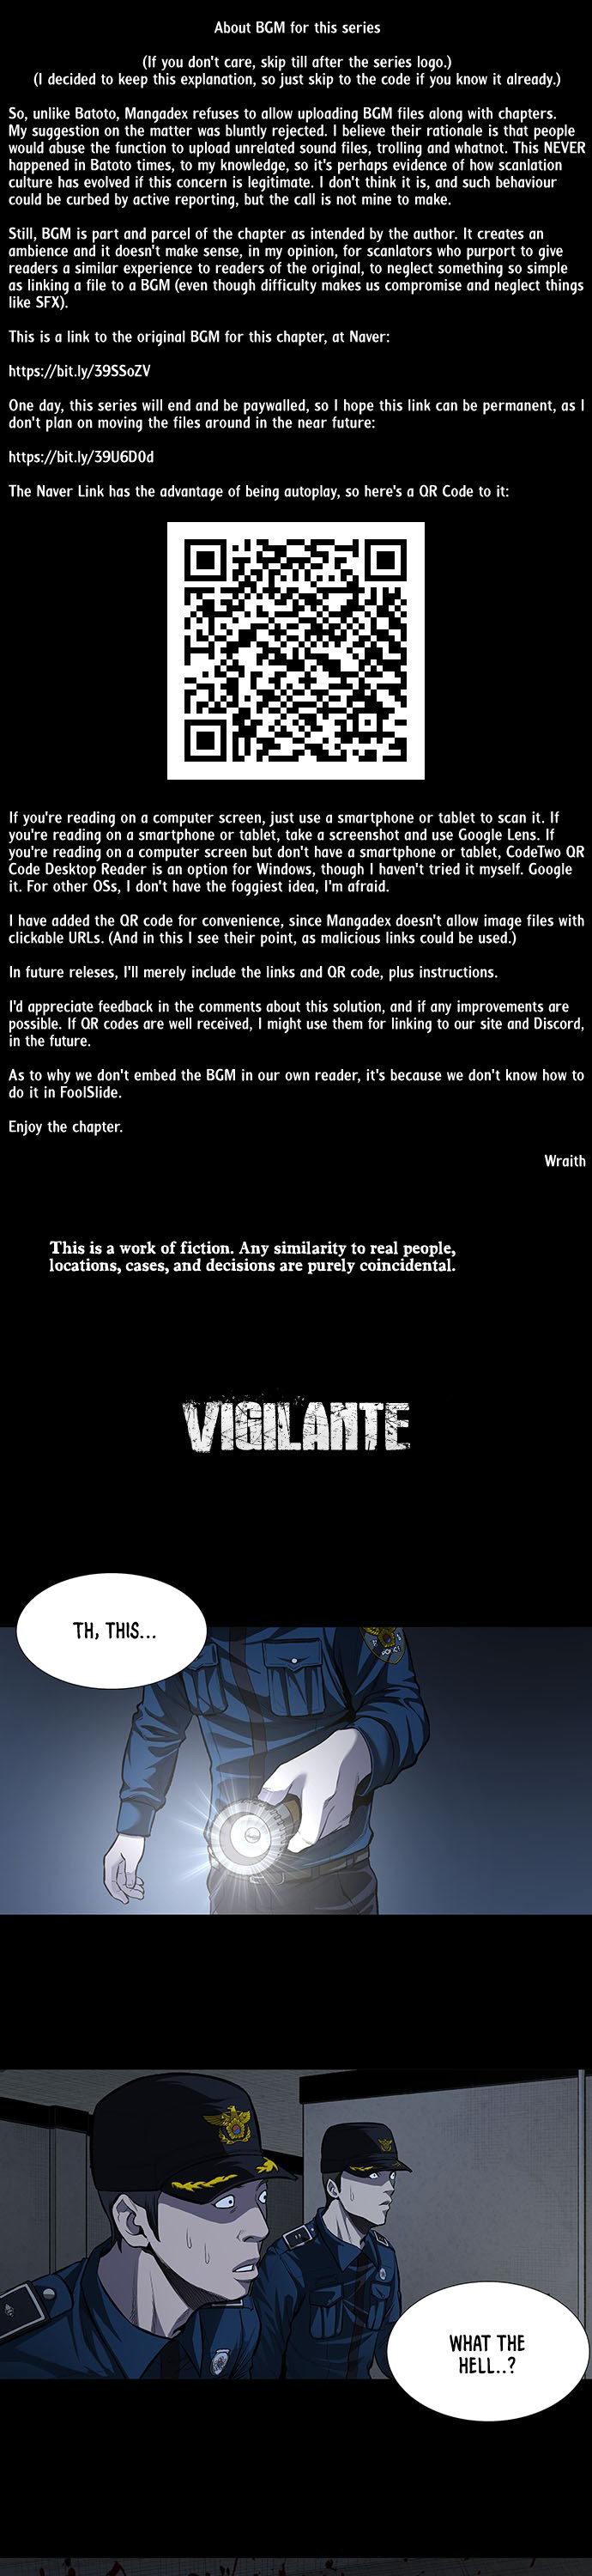 Vigilante (Crg) - Page 1